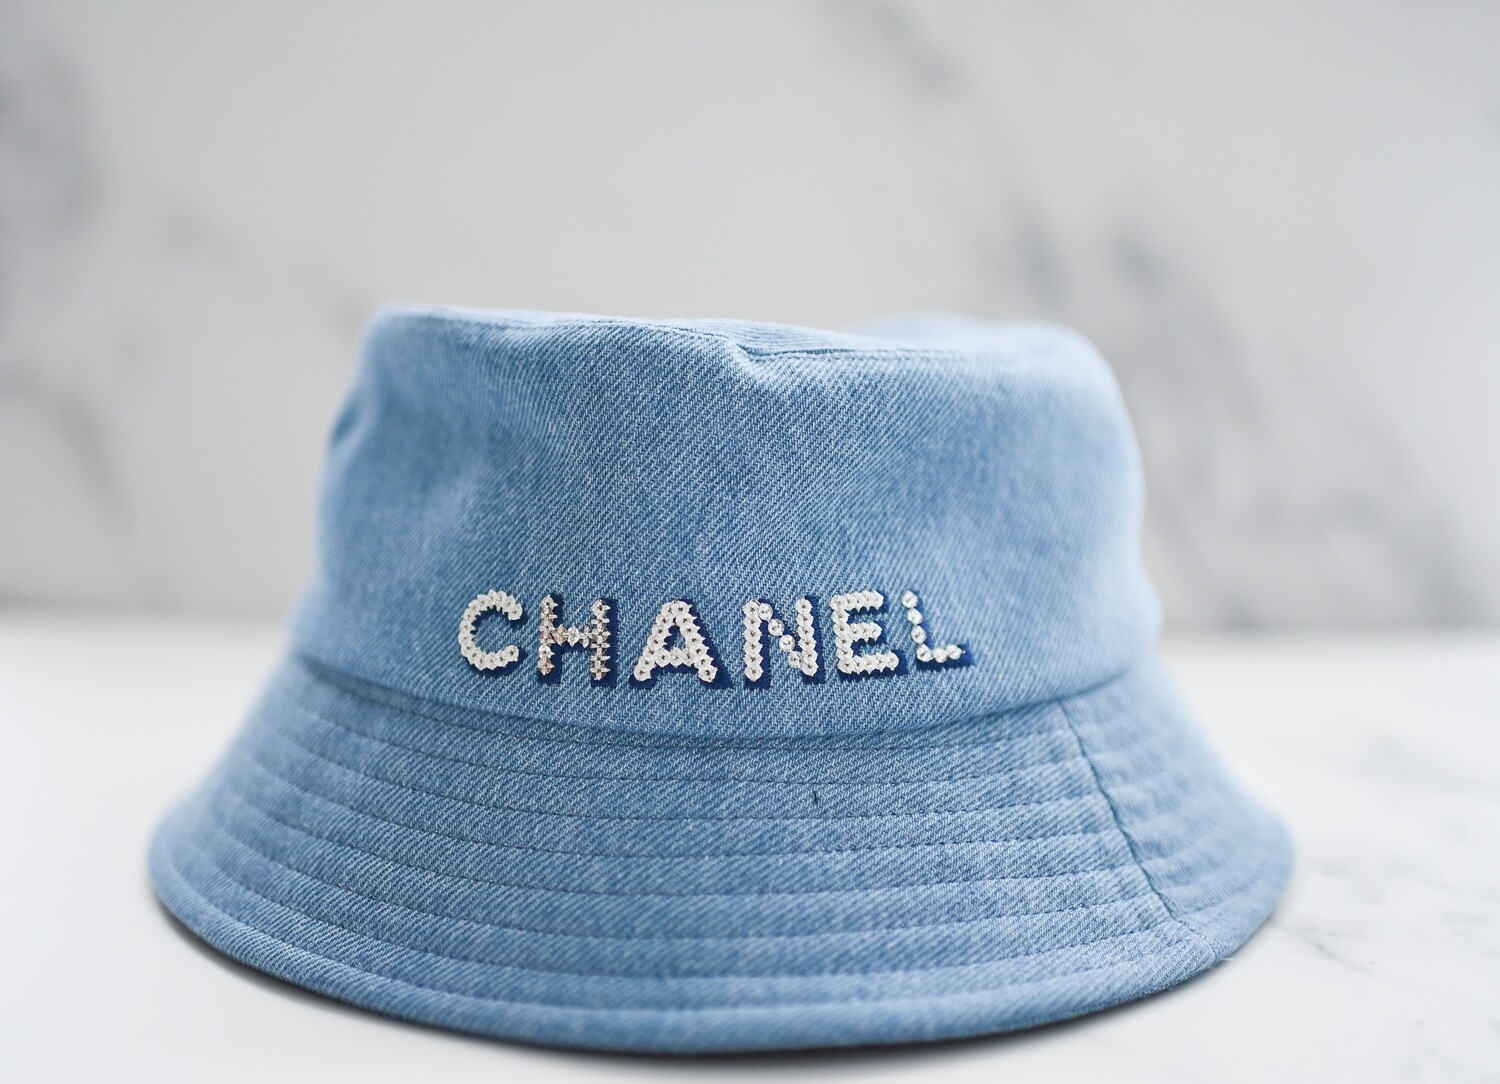 Chanel Denim & Sequin Bucket Hat, New